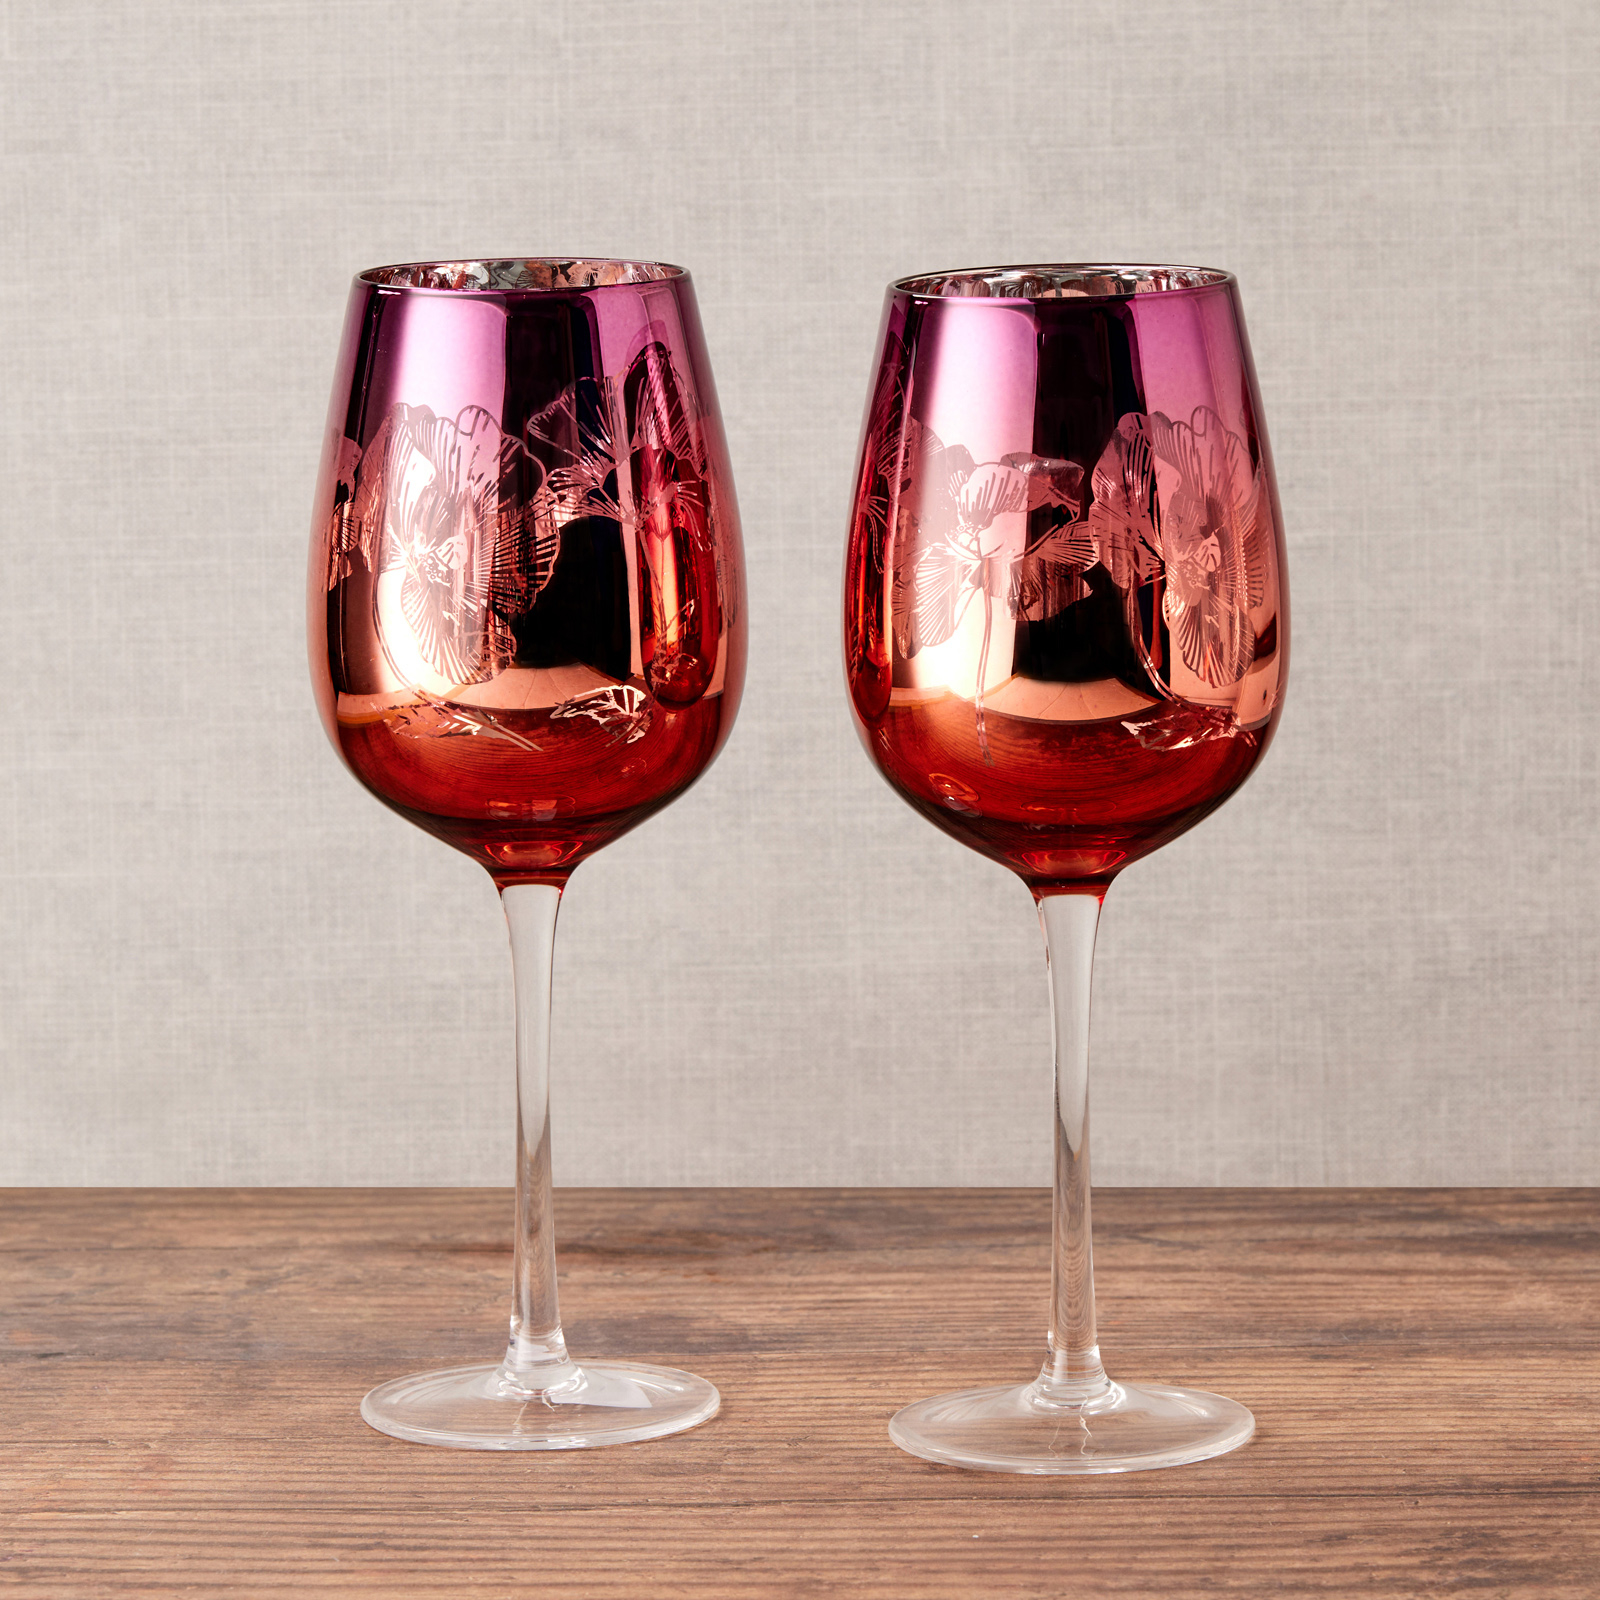 Visuel deLot de 2 verres à vin by Artland - Bloom Magnifiquement décorés avec un design détaillé rose, orange et argent, ces délicats verres à vin comportent un bouquet de fleurs miroir, le tout sur un grand bol incurvé, et une tige haute pour une élégance ultime